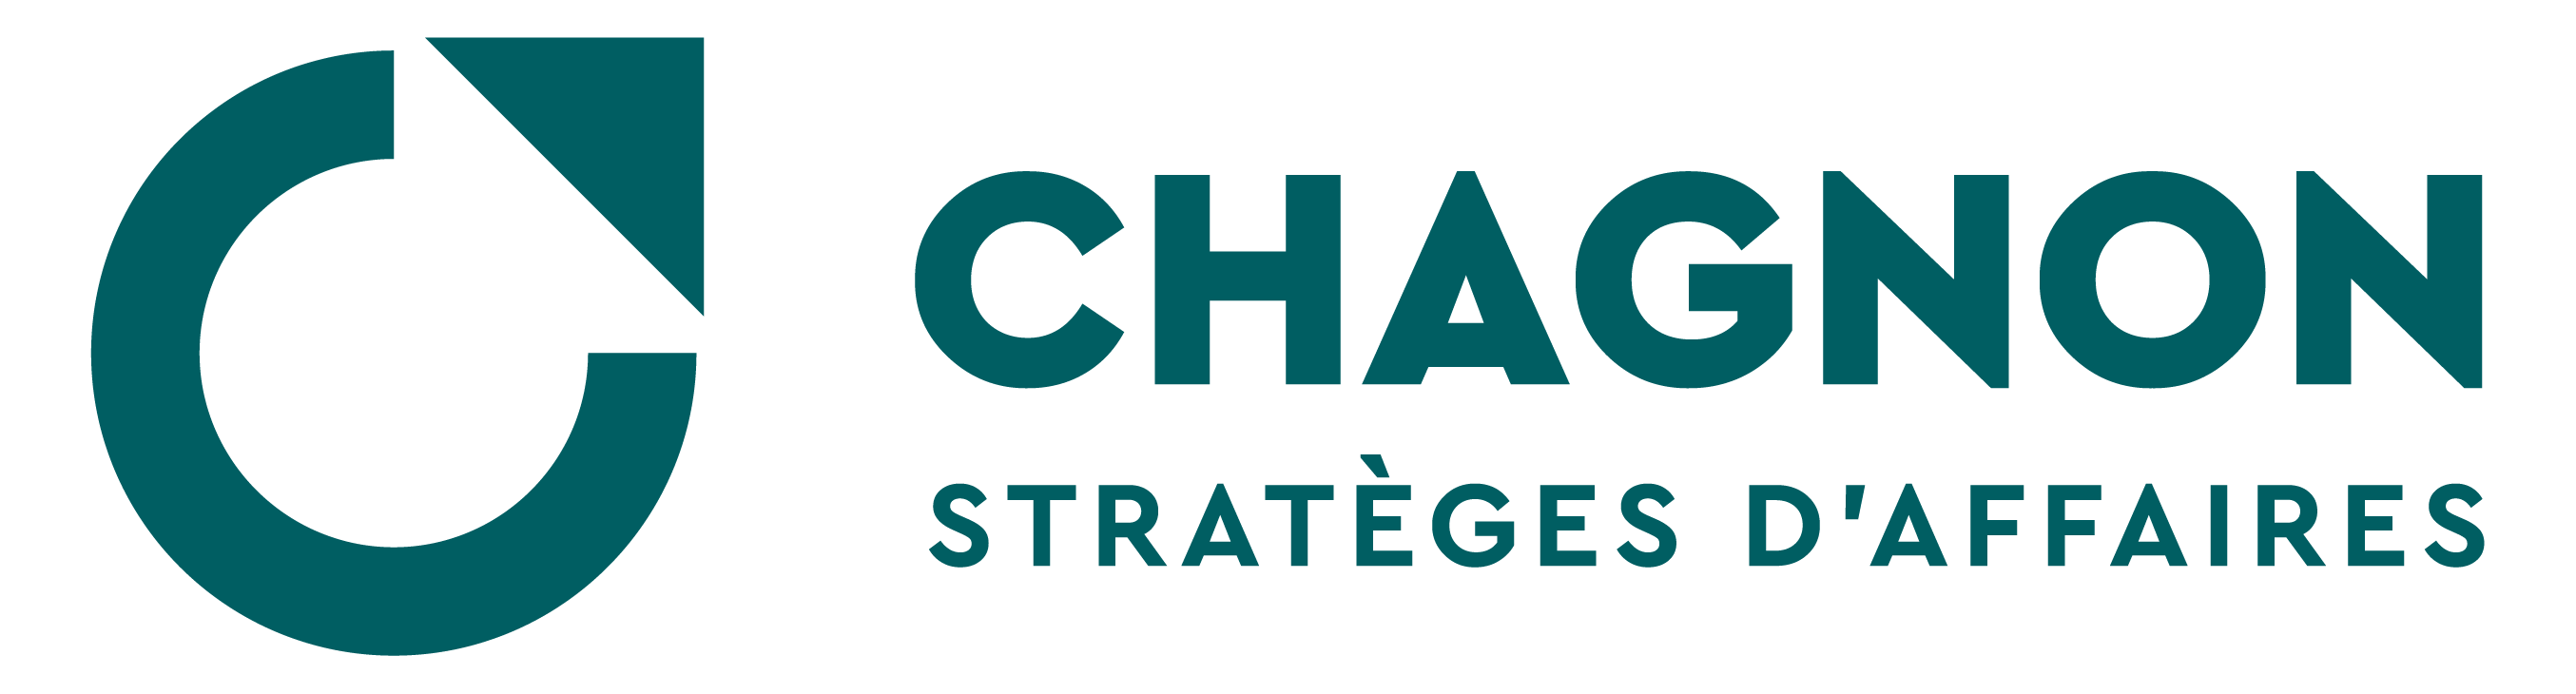 Chagnon Stratèges